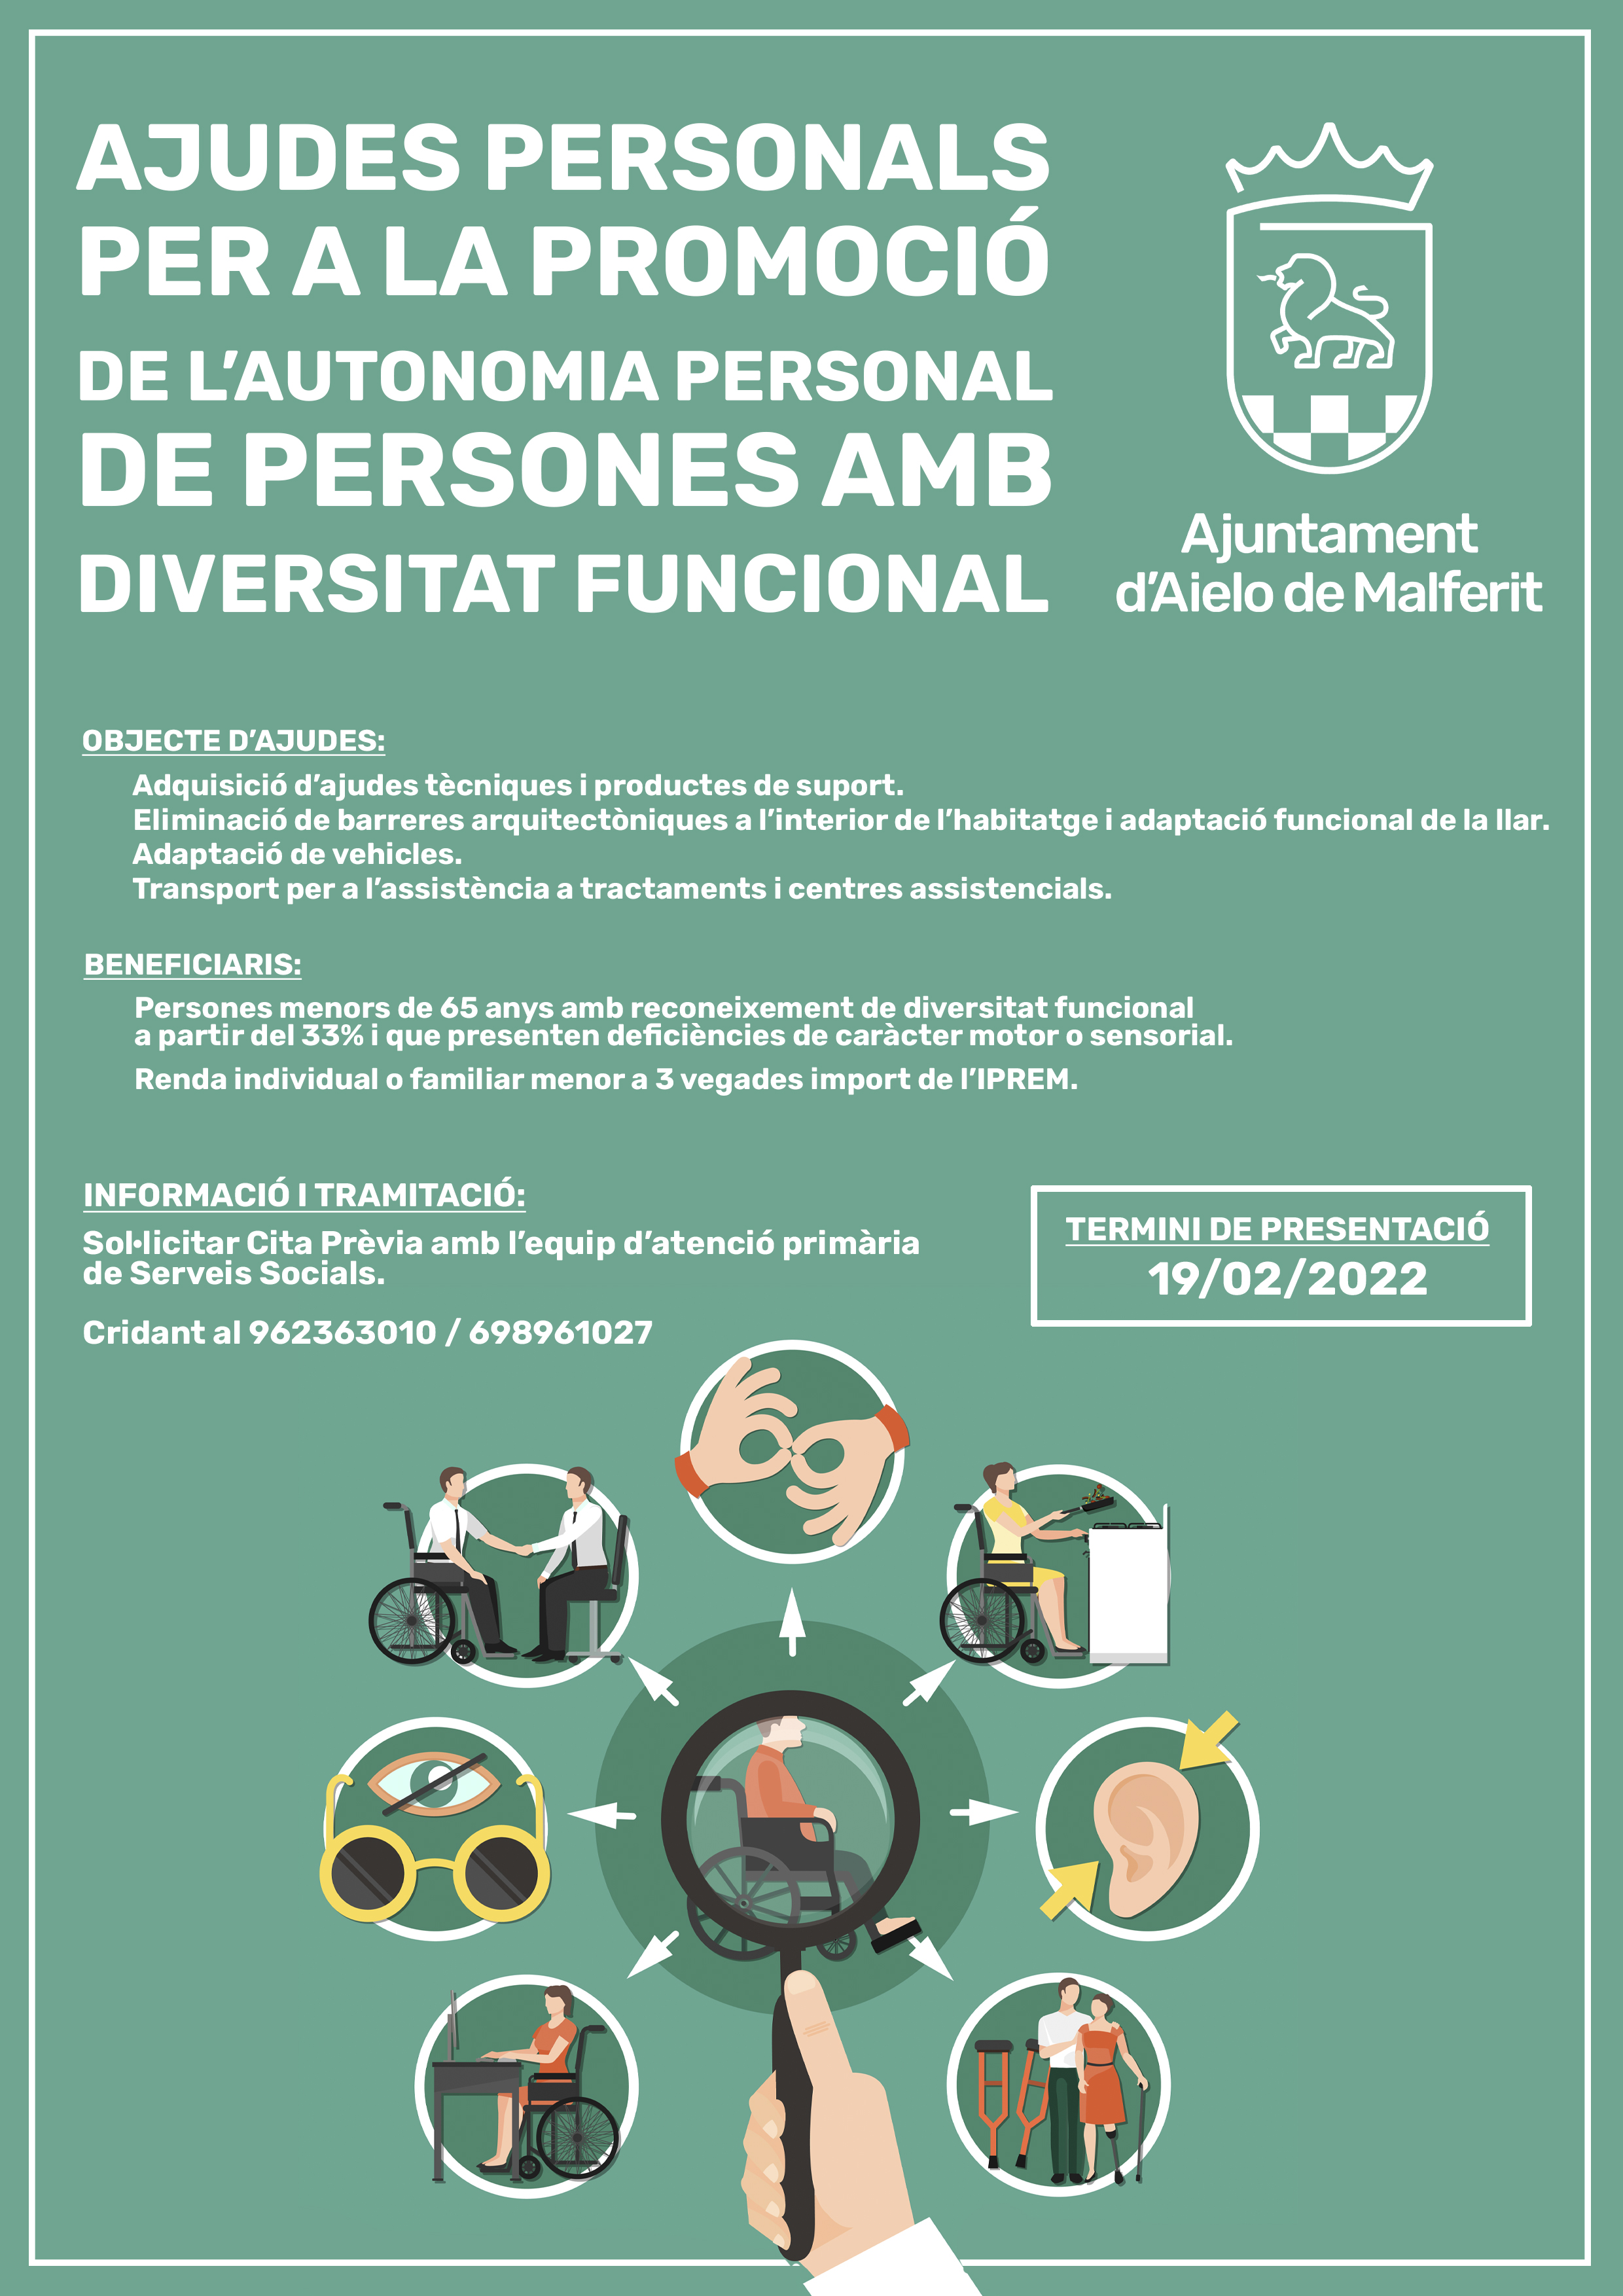 Ajudes personals per a la promoció de l'autonomia personal de persones amb diversitat funcional